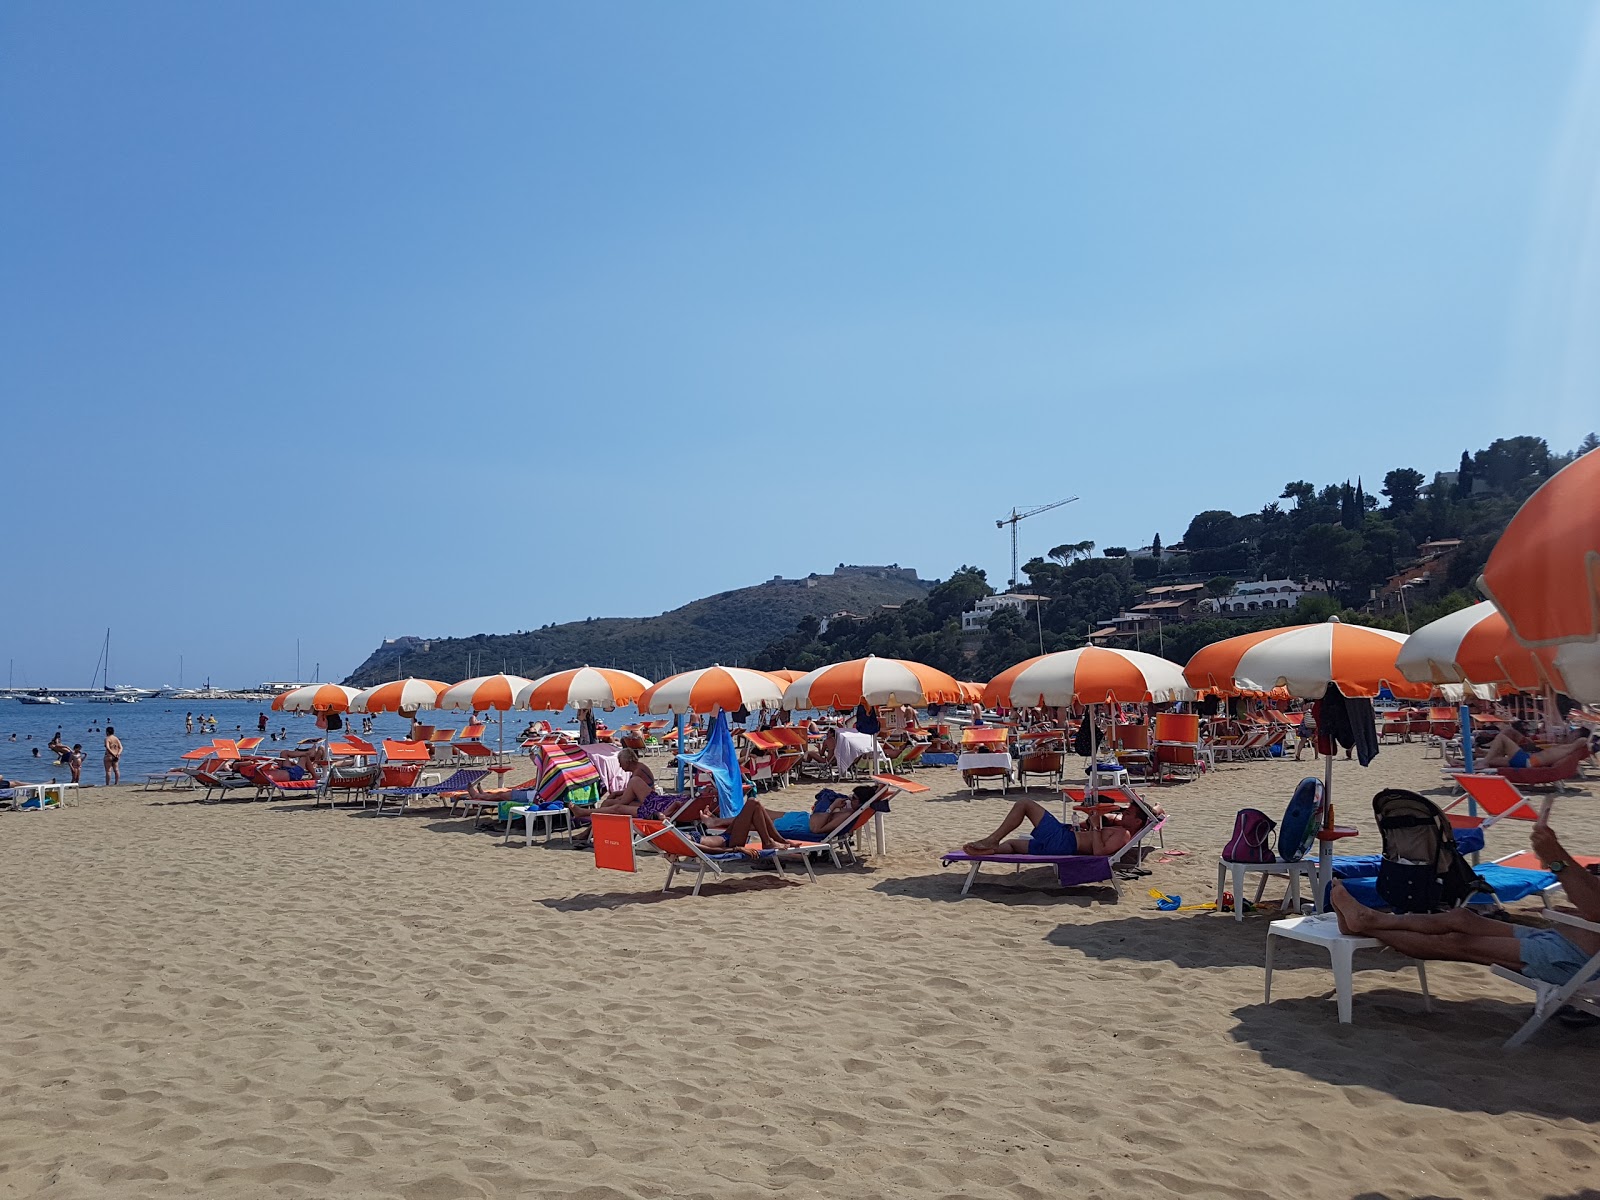 Foto de Spiaggia della Feniglia ubicado en área natural